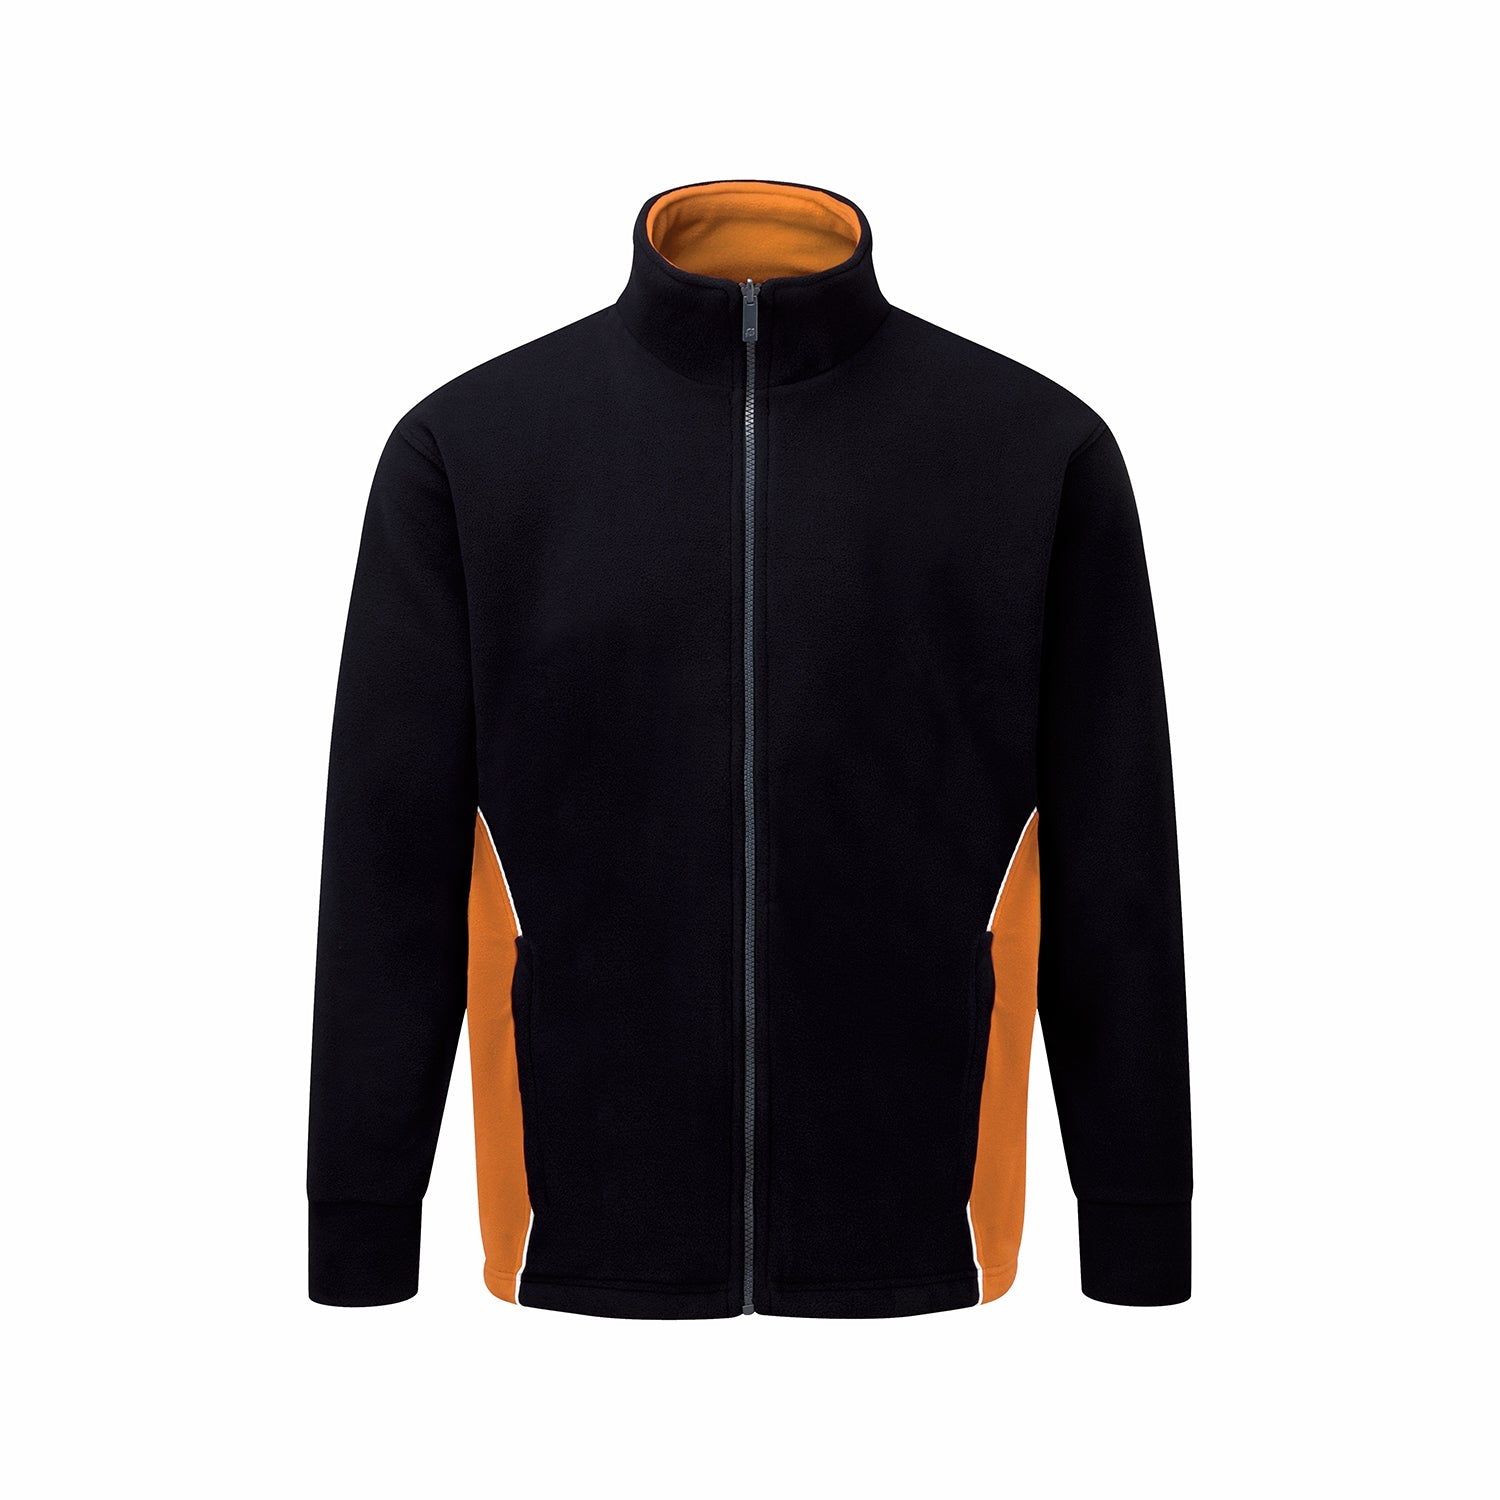 ORN Silverswift Two-Tone Workwear Fleece - Black/Orange